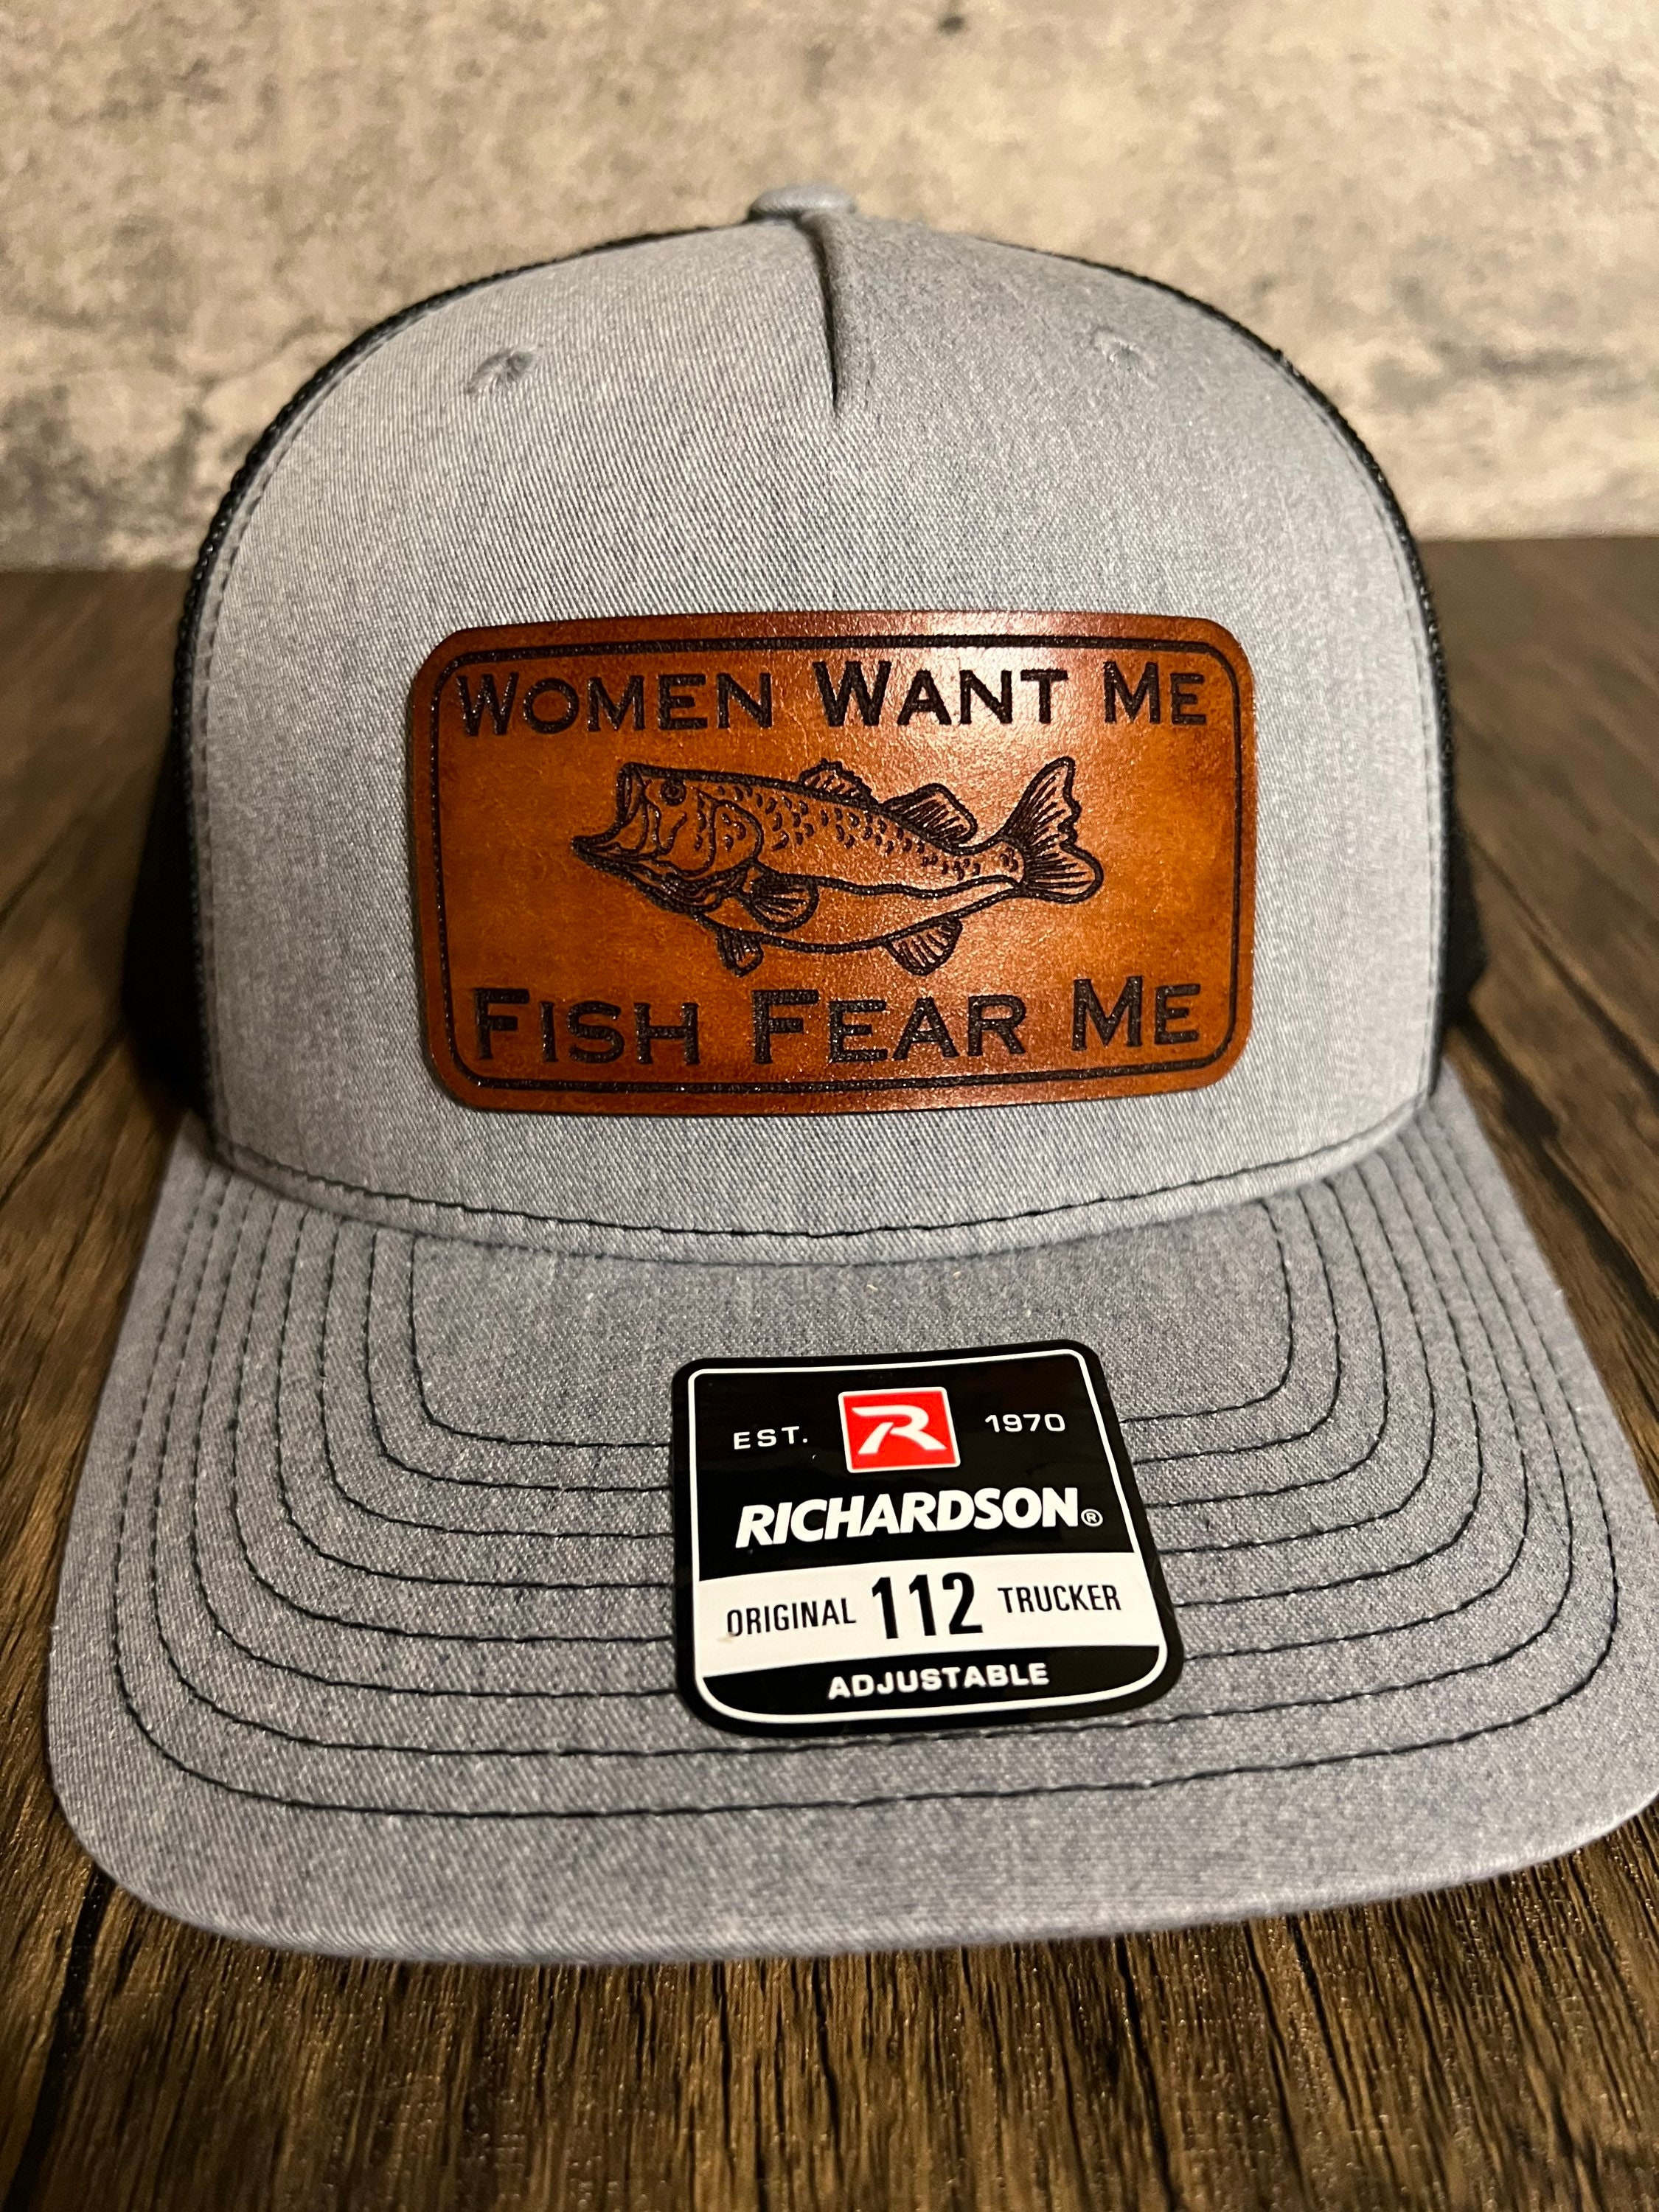 Women Want Me Fish Fear Me - Funny Fishing Hat - Dad / Husband Gift - Fisherman Gift - Fishing Gift - Bass Fishing - Fishing Captain Hat